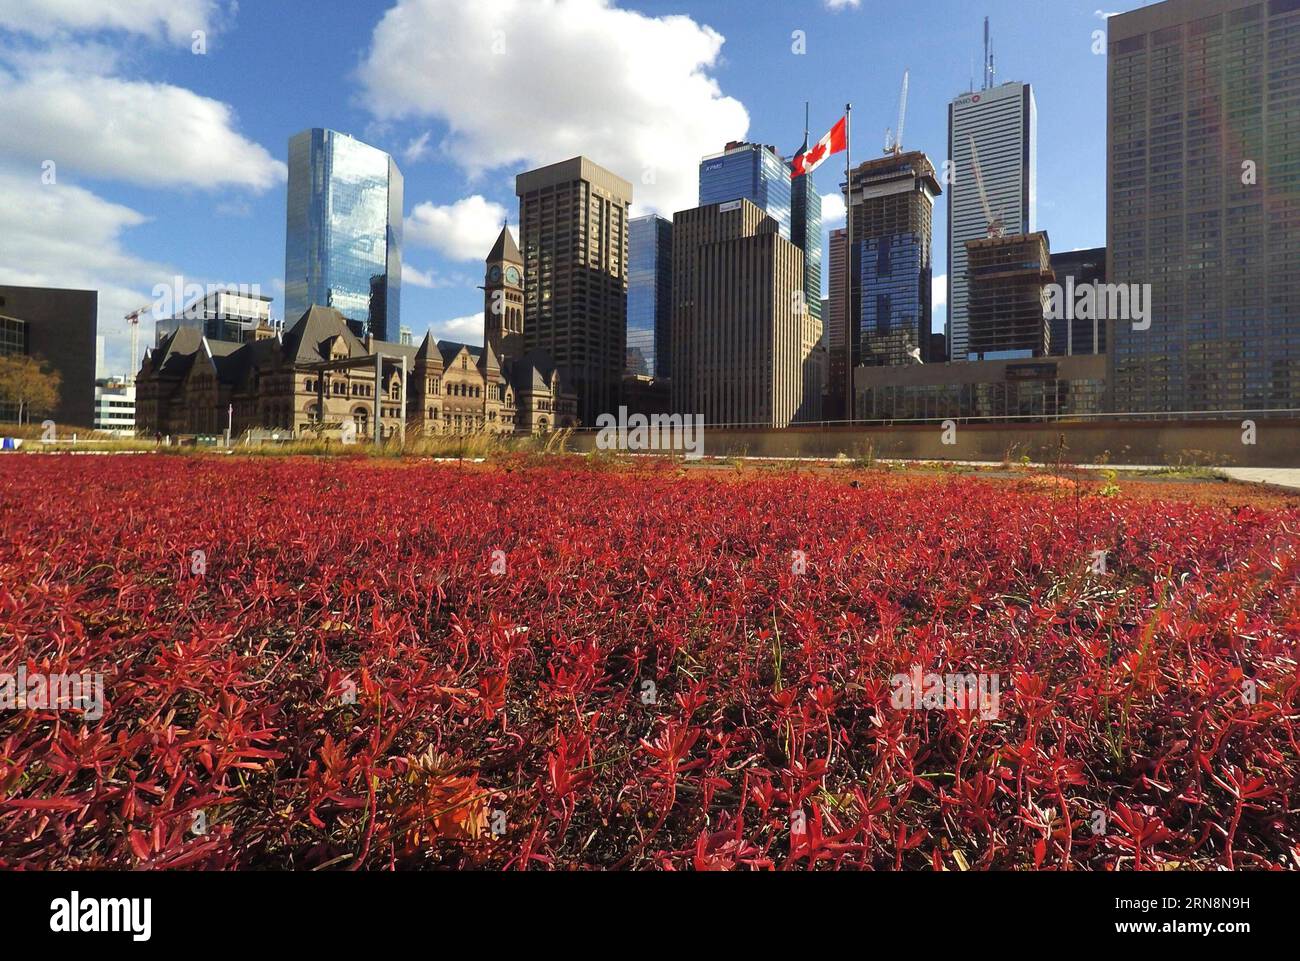 (151031) -- TORONTO, 30. Oktober 2015 -- Toronto City Hall's Podium Green roof is See in Toronto, Kanada, 30. Oktober 2015. Toronto ist die erste Stadt in Nordamerika, die eine Satzung hat, die den Bau von Gründächern für Neubauten vorschreibt und regelt. Vom 1. Februar 2010 bis zum 1. März 2015 wurden in Toronto 260 Gründächer mit einer Grünfläche von 196.000 Quadratmetern errichtet. In Toronto gibt es bisher insgesamt 444 begrünte Dächer. ) KANADA-TORONTO-GRÜNES DACH ZouxZheng PUBLICATIONxNOTxINxCHN Toronto OCT 30 2015 Toronto City Hall S Podium Green Roof IS Lakes in Toronto Kanada OCT 30 2015 Stockfoto